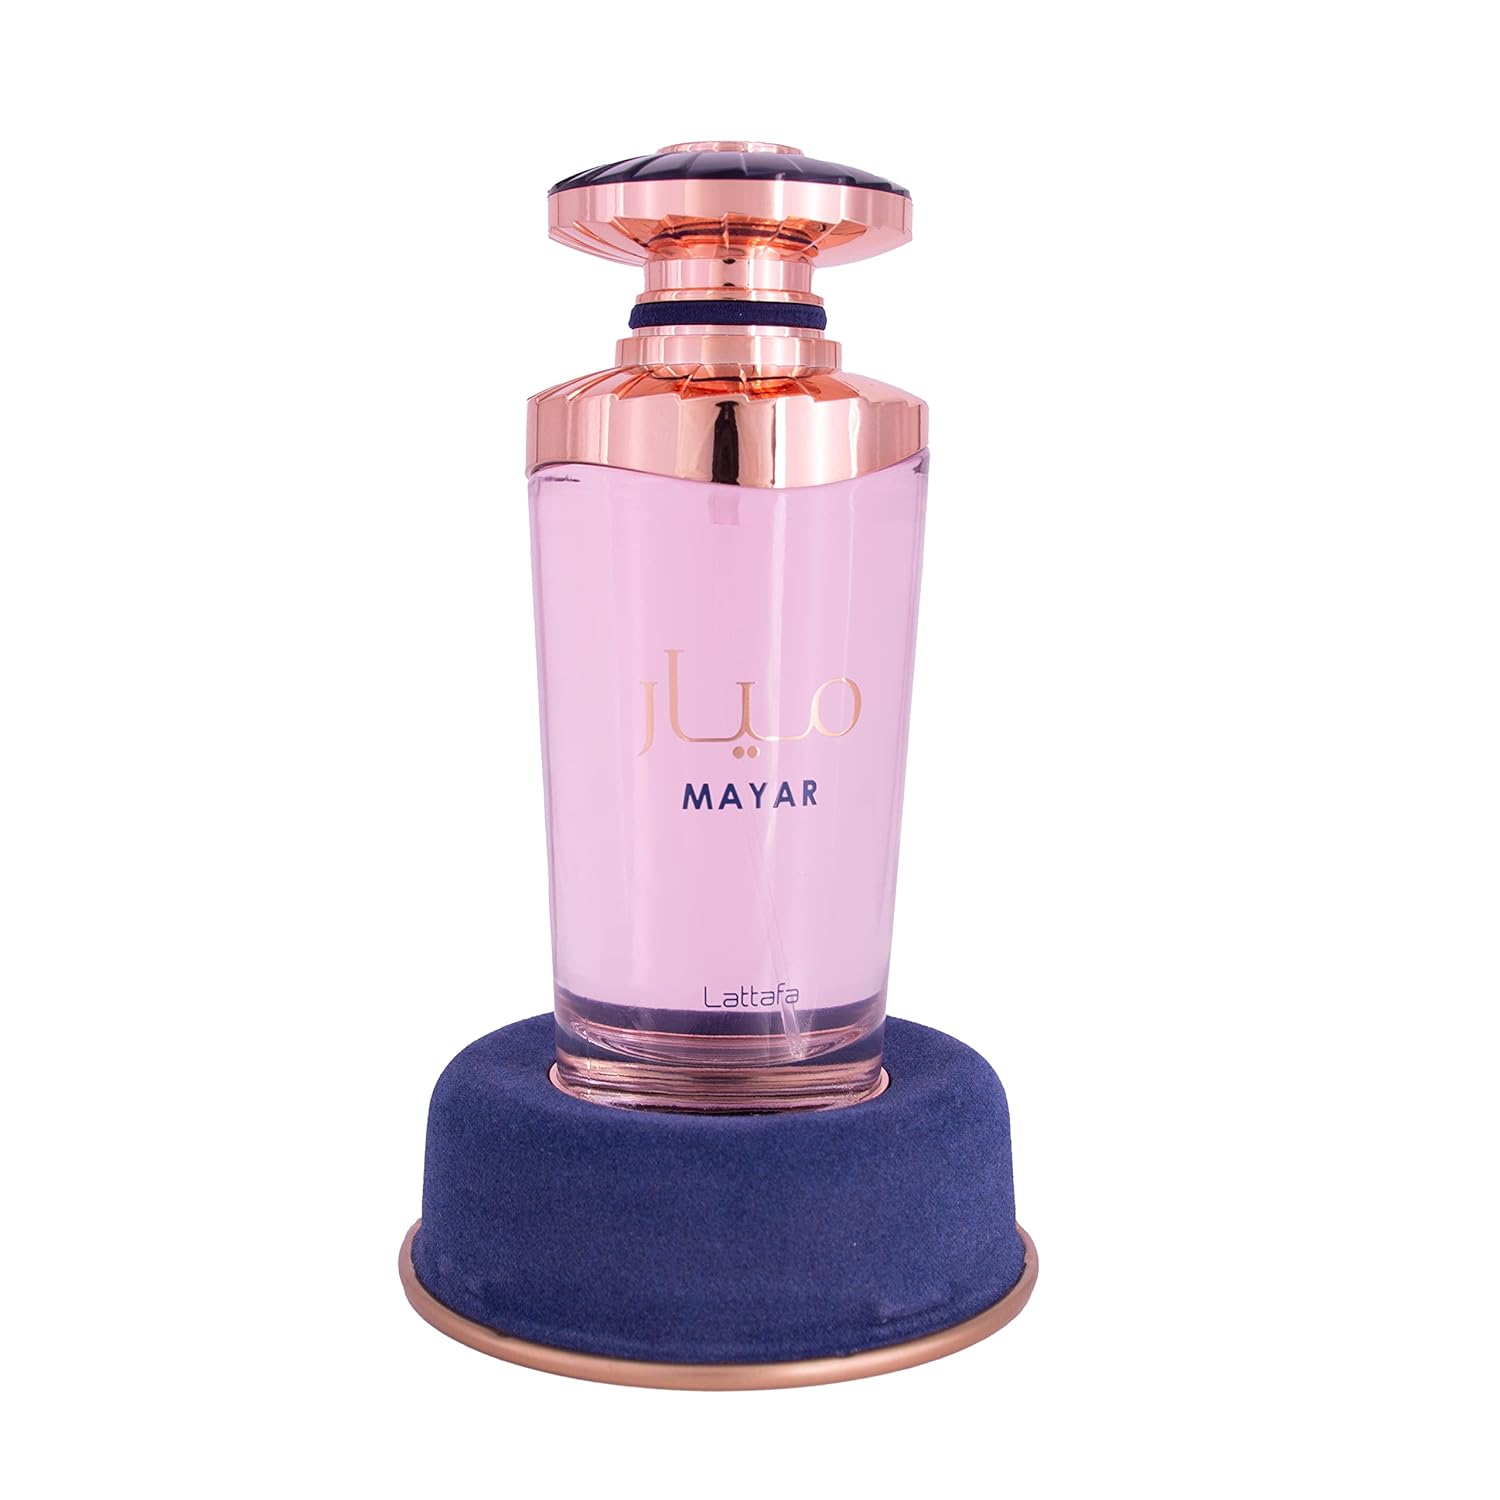 Lattafa-Perfumes-Mayar---Eau-de-Parfum-7753